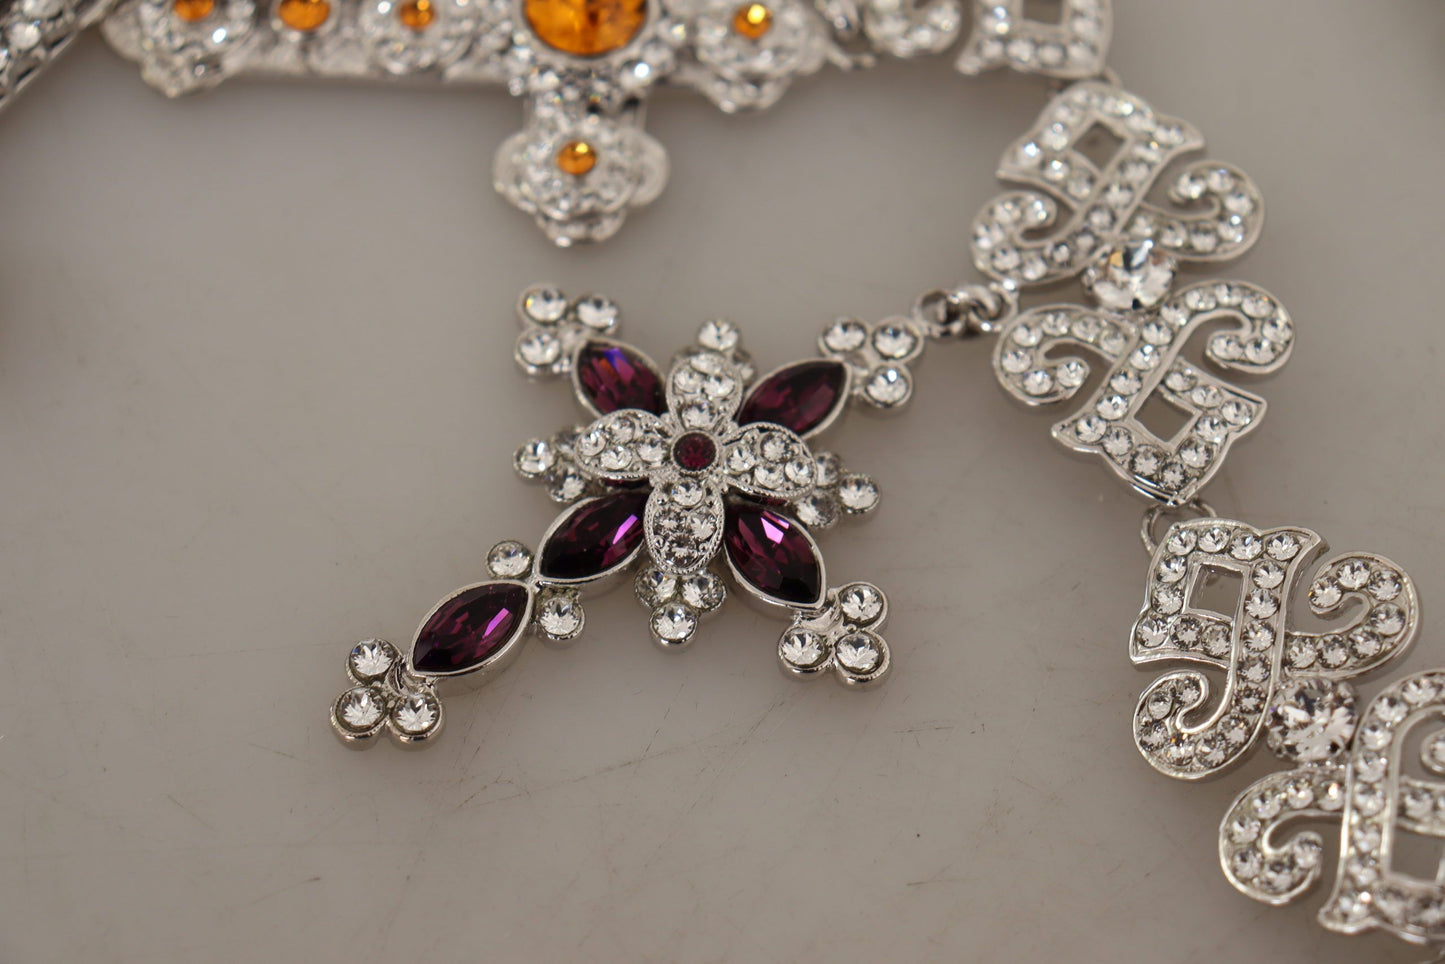 Elegant Multicolor Crystal Cross Necklace